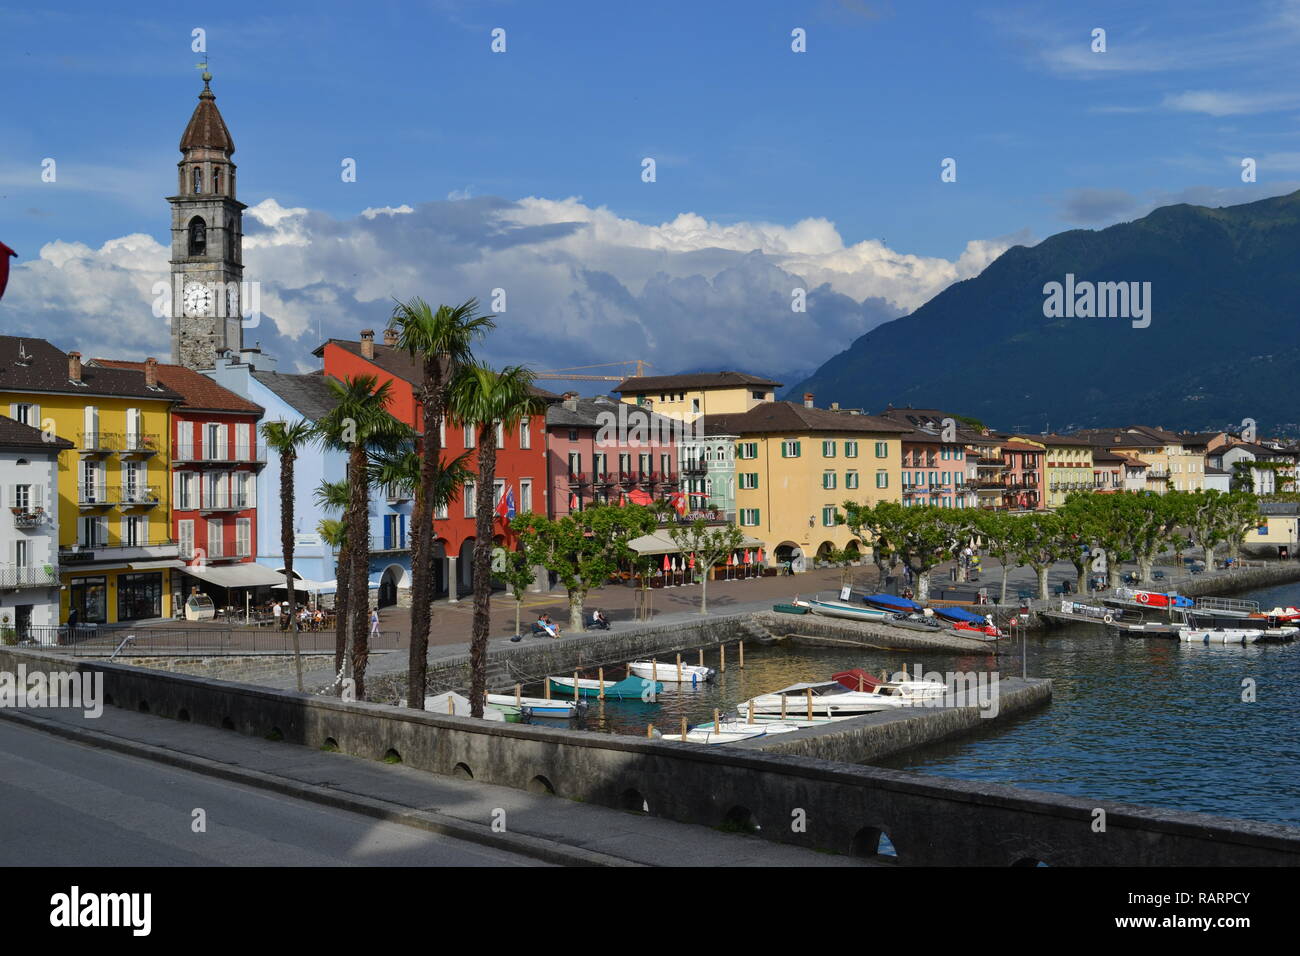 Lake Maggiore, Italy Stock Photo